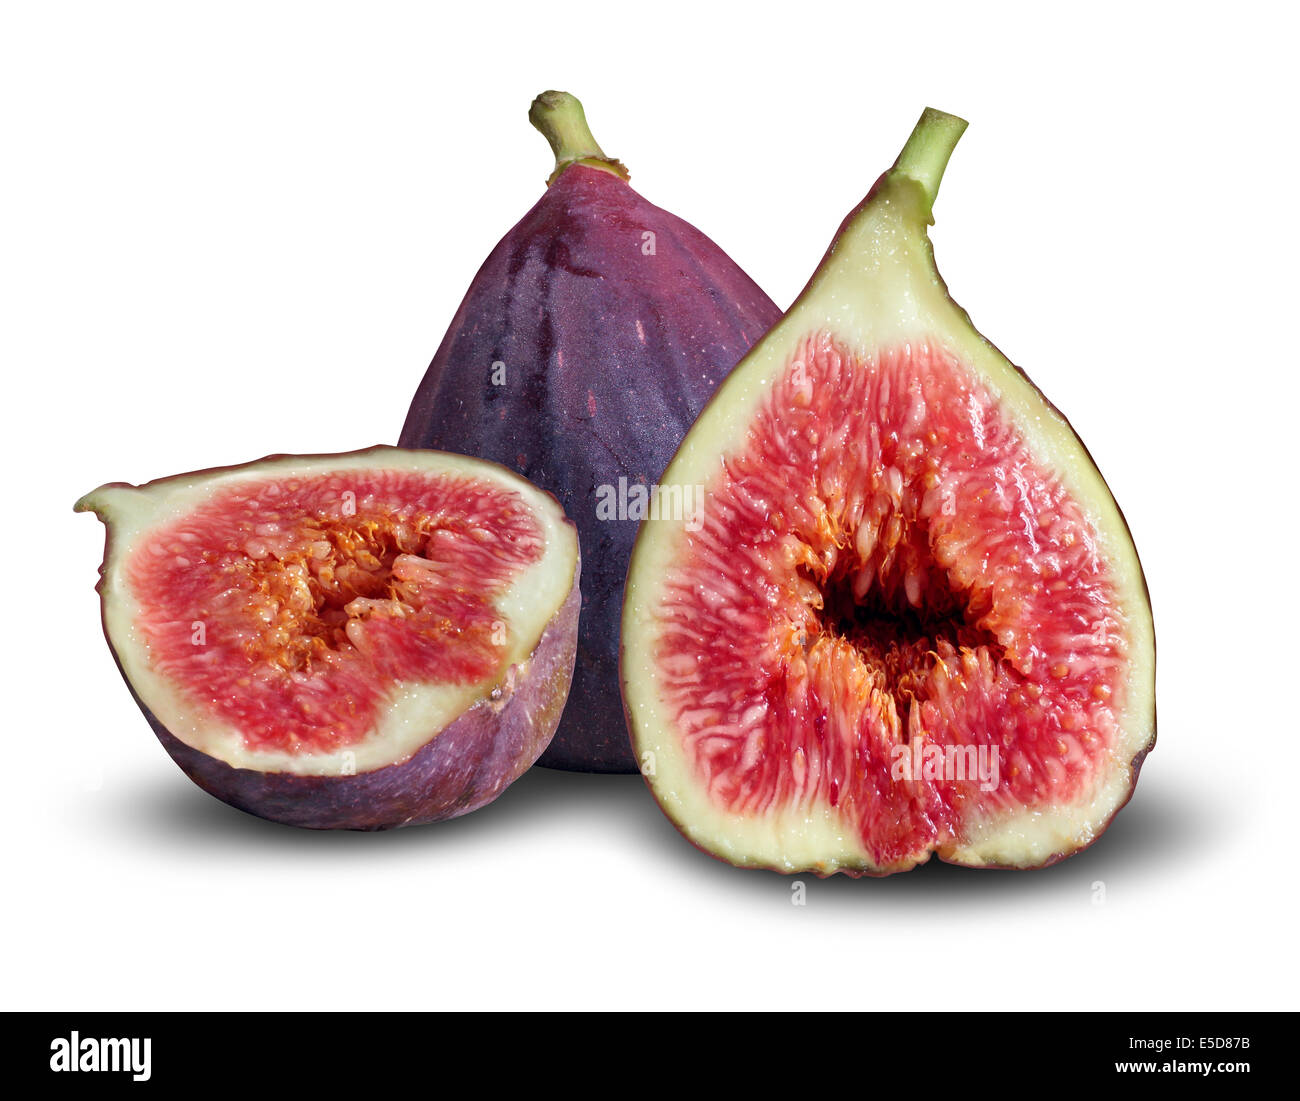 Concpt de figue comme un groupe de figues fraîches dans un symbole d'une bonne nutrition et une alimentation saine. Banque D'Images